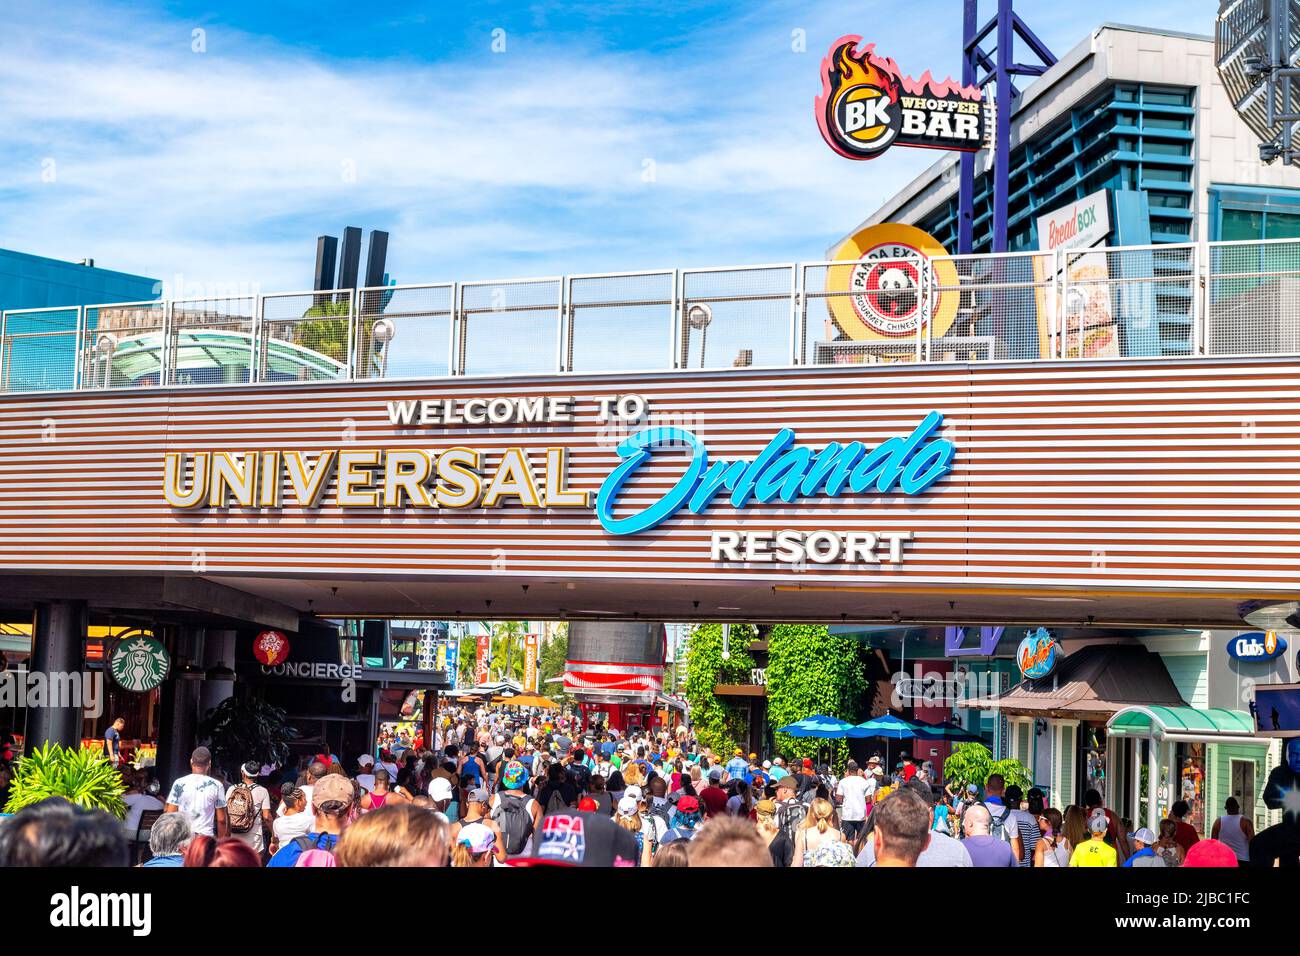 Folla di persone sotto un passaggio pedonale dove si può leggere il cartello Benvenuti all'Universal Orlando Resort.Universal Studios Florida è un luogo famoso Foto Stock